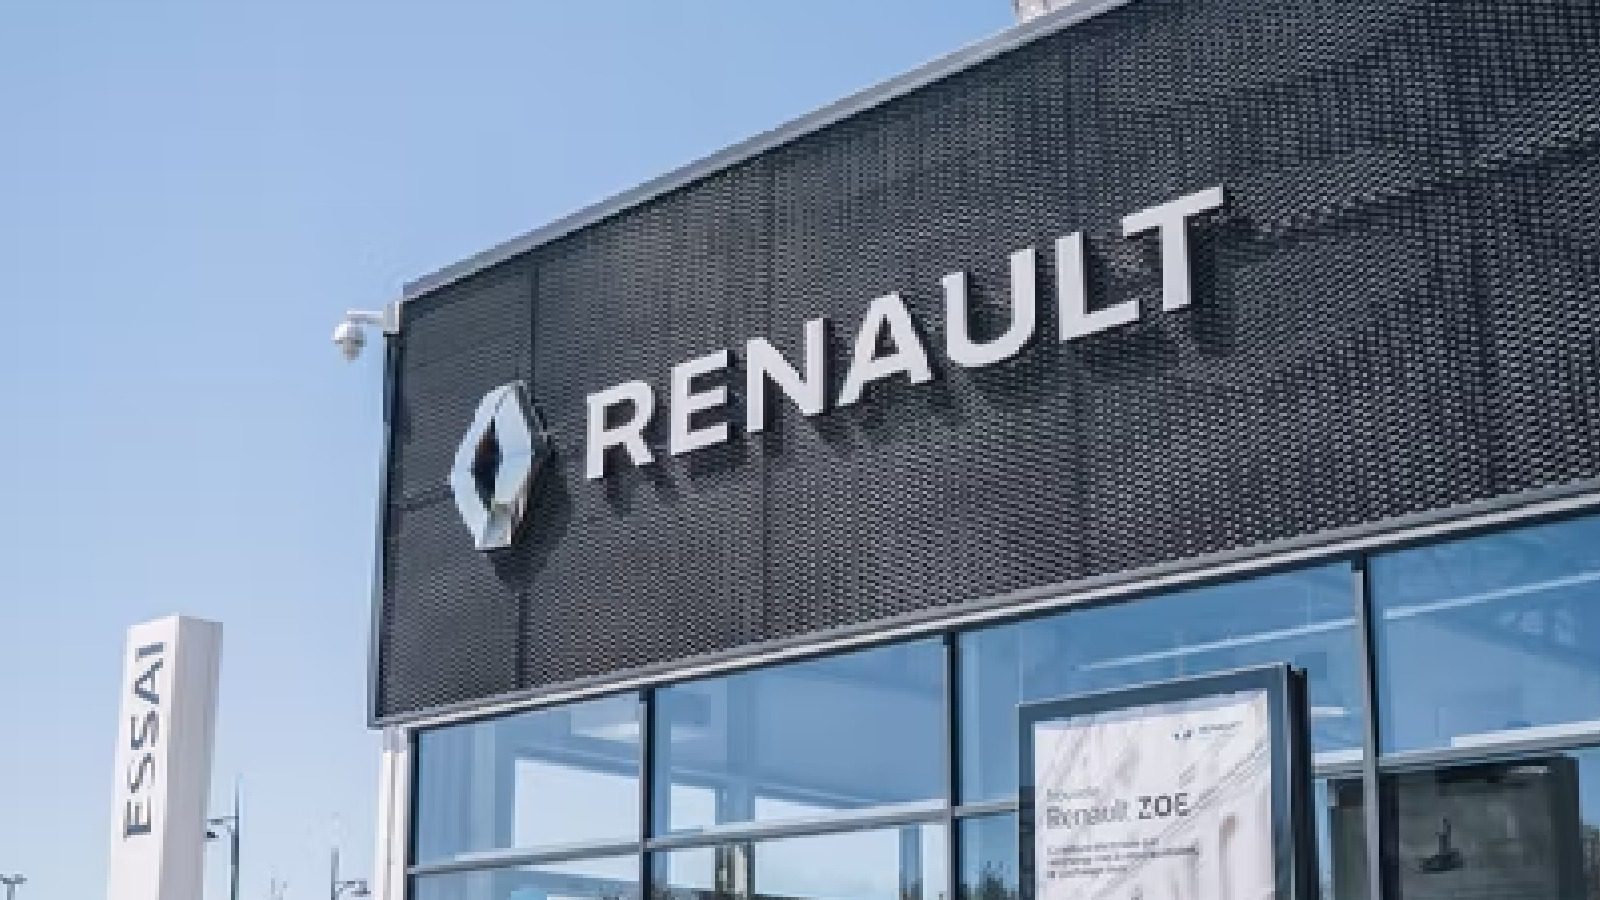 Renault Motors